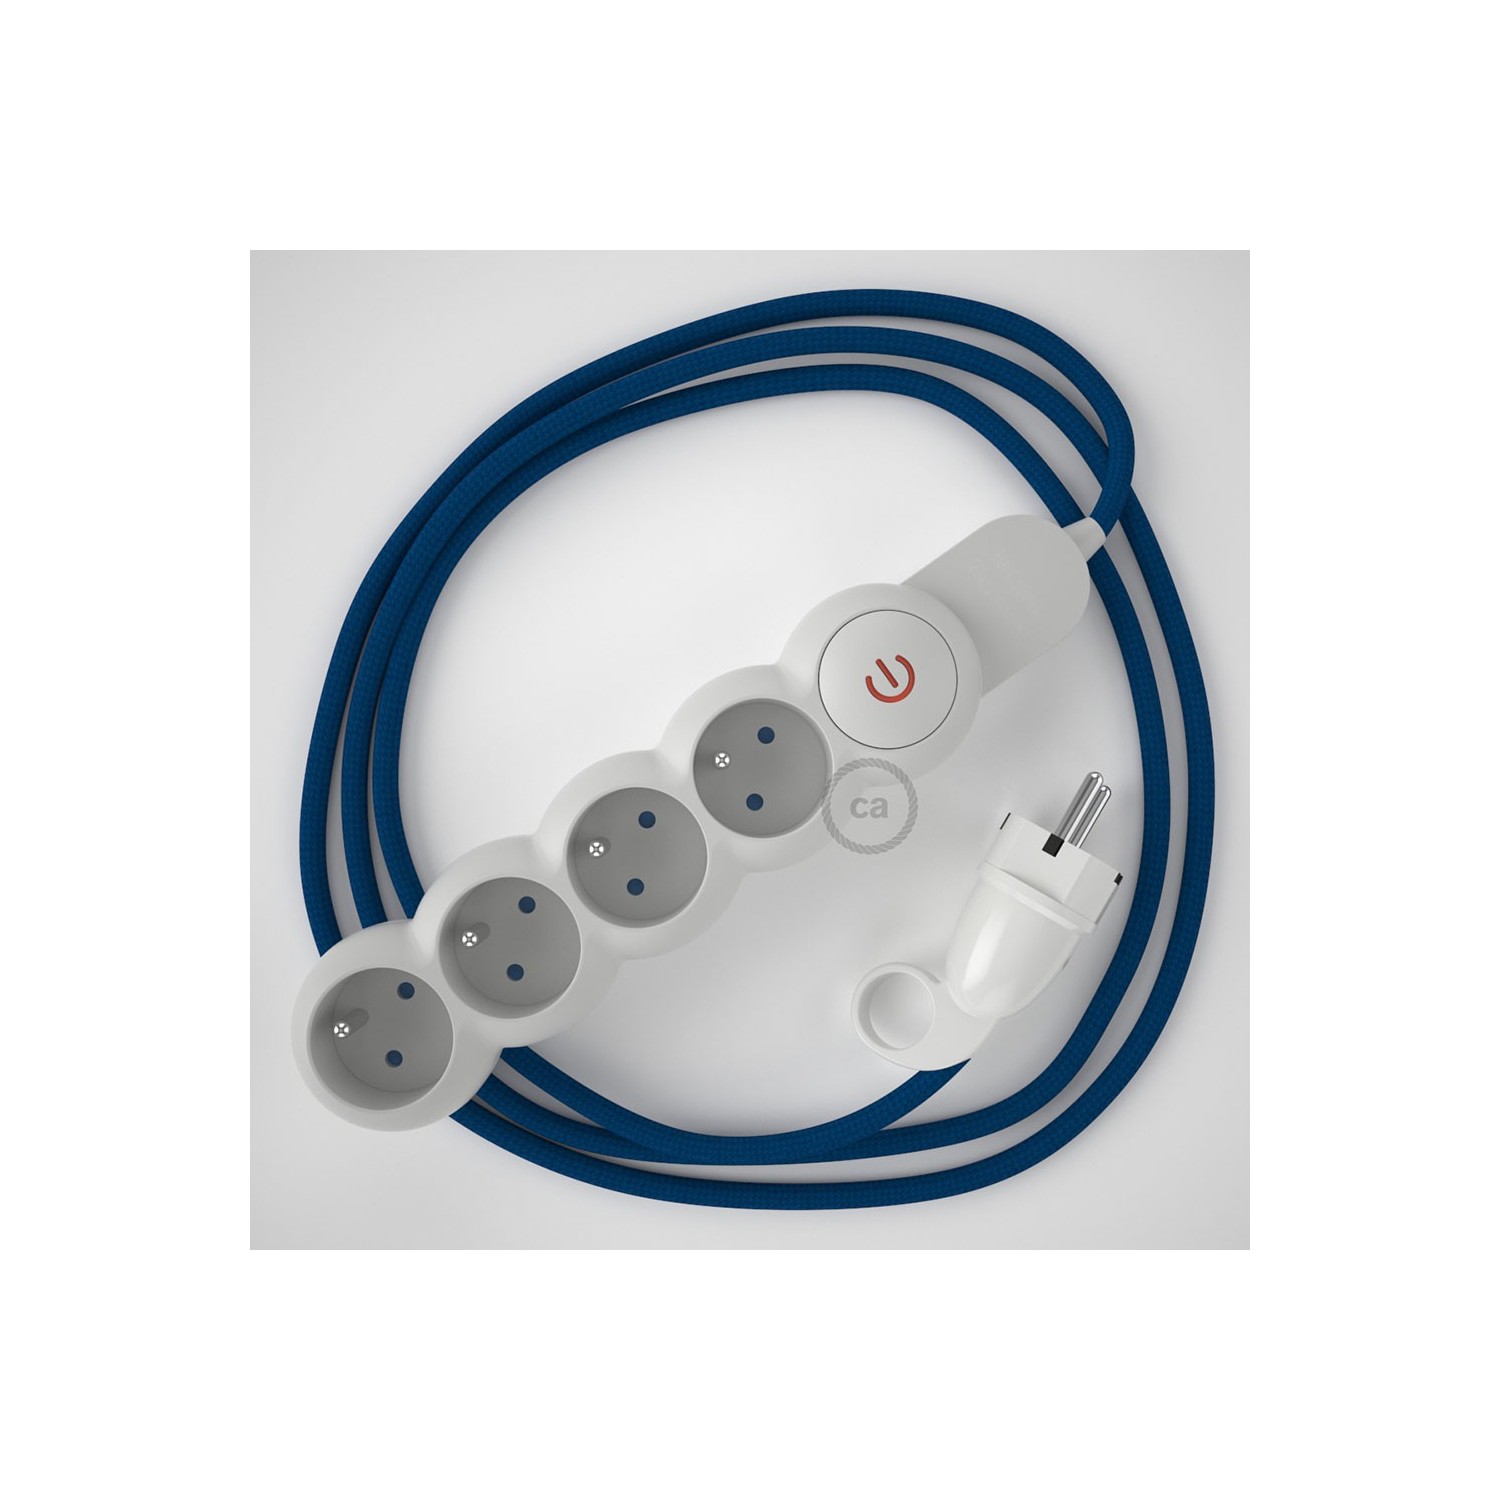 Bloc multiprise avec câble en tissu Effet Soie Bleu RM12 et fiche schuko avec anneau confort